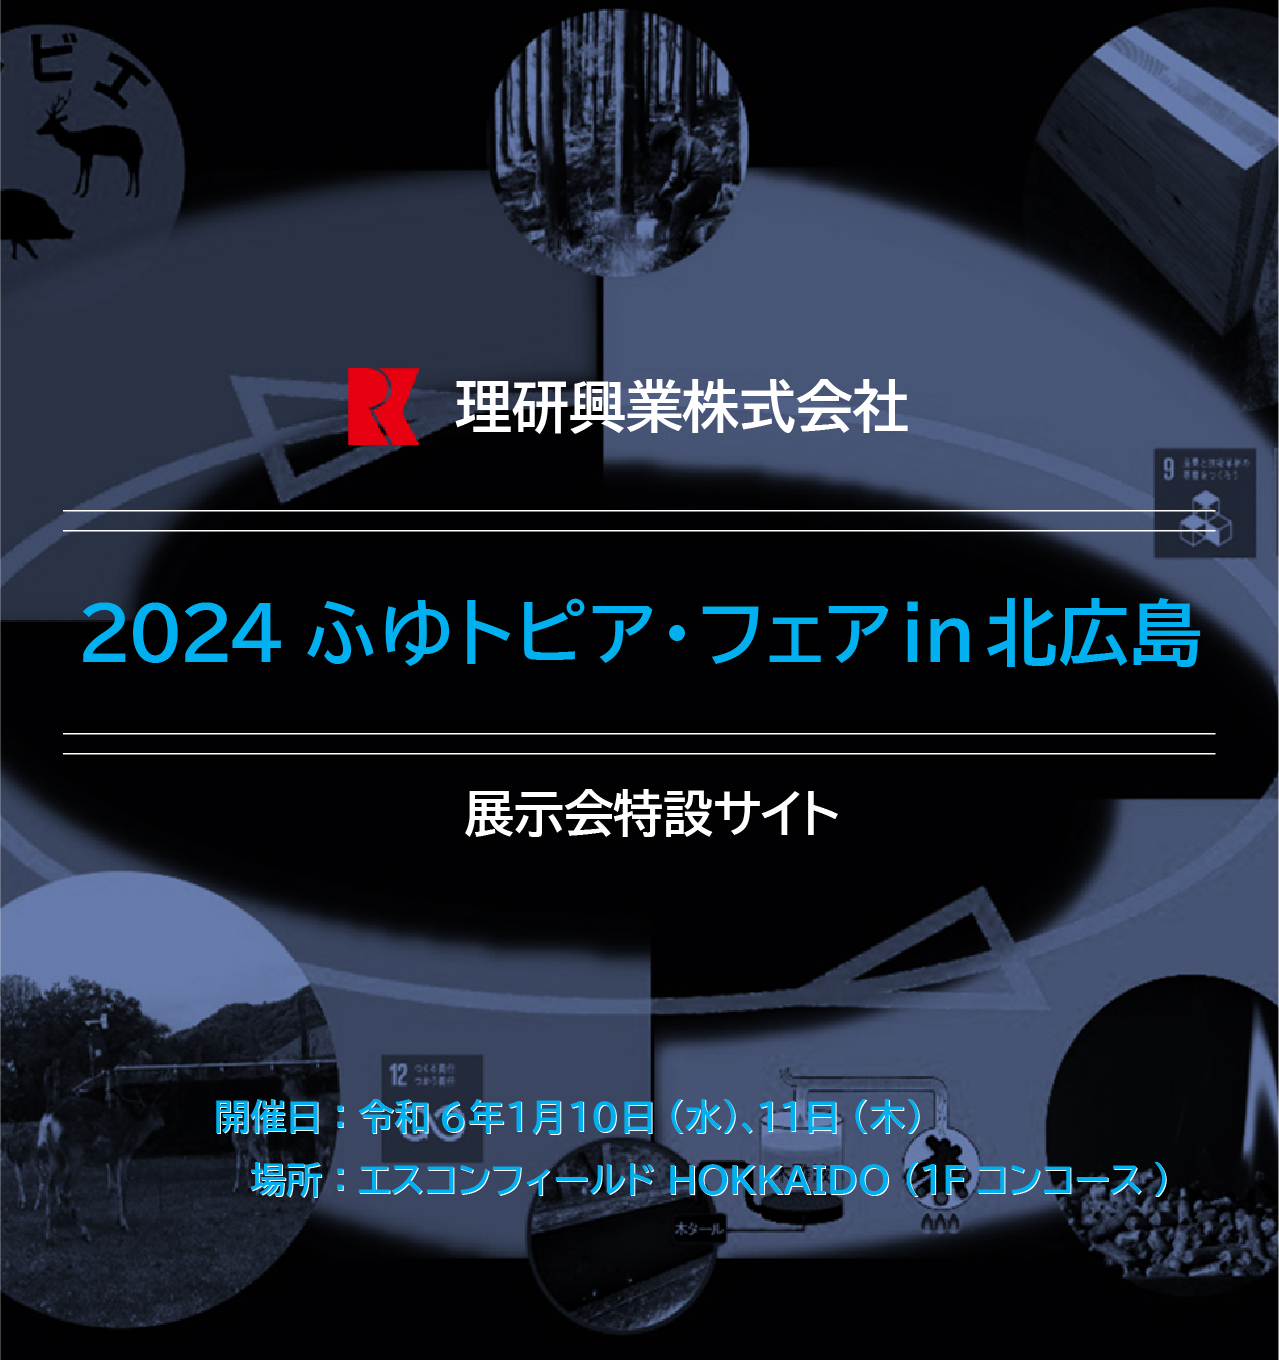 2024 ふゆトピア・フェア in 北広島|開催日：令和6年1月10日（水）、11日（木）| 場所：エスコンフィールド HOKKAIDO (1Fコンコース)